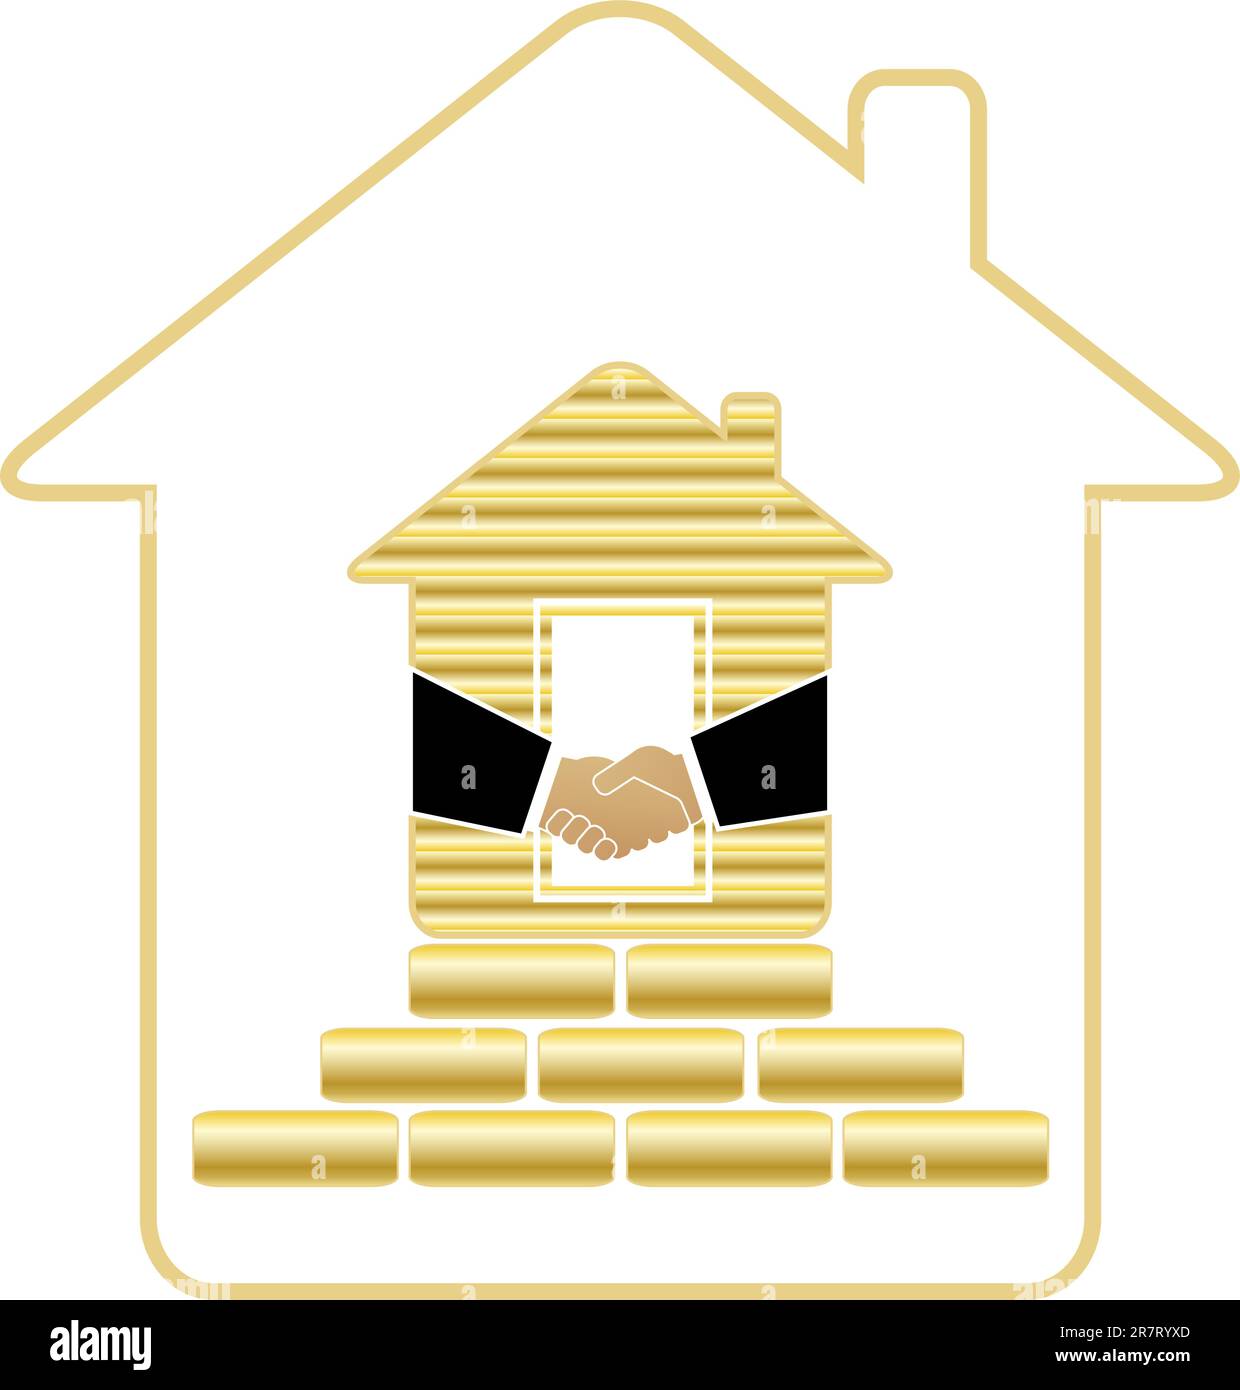 casa simbolo ricca con mattoni dorati e stretta di mano Illustrazione Vettoriale